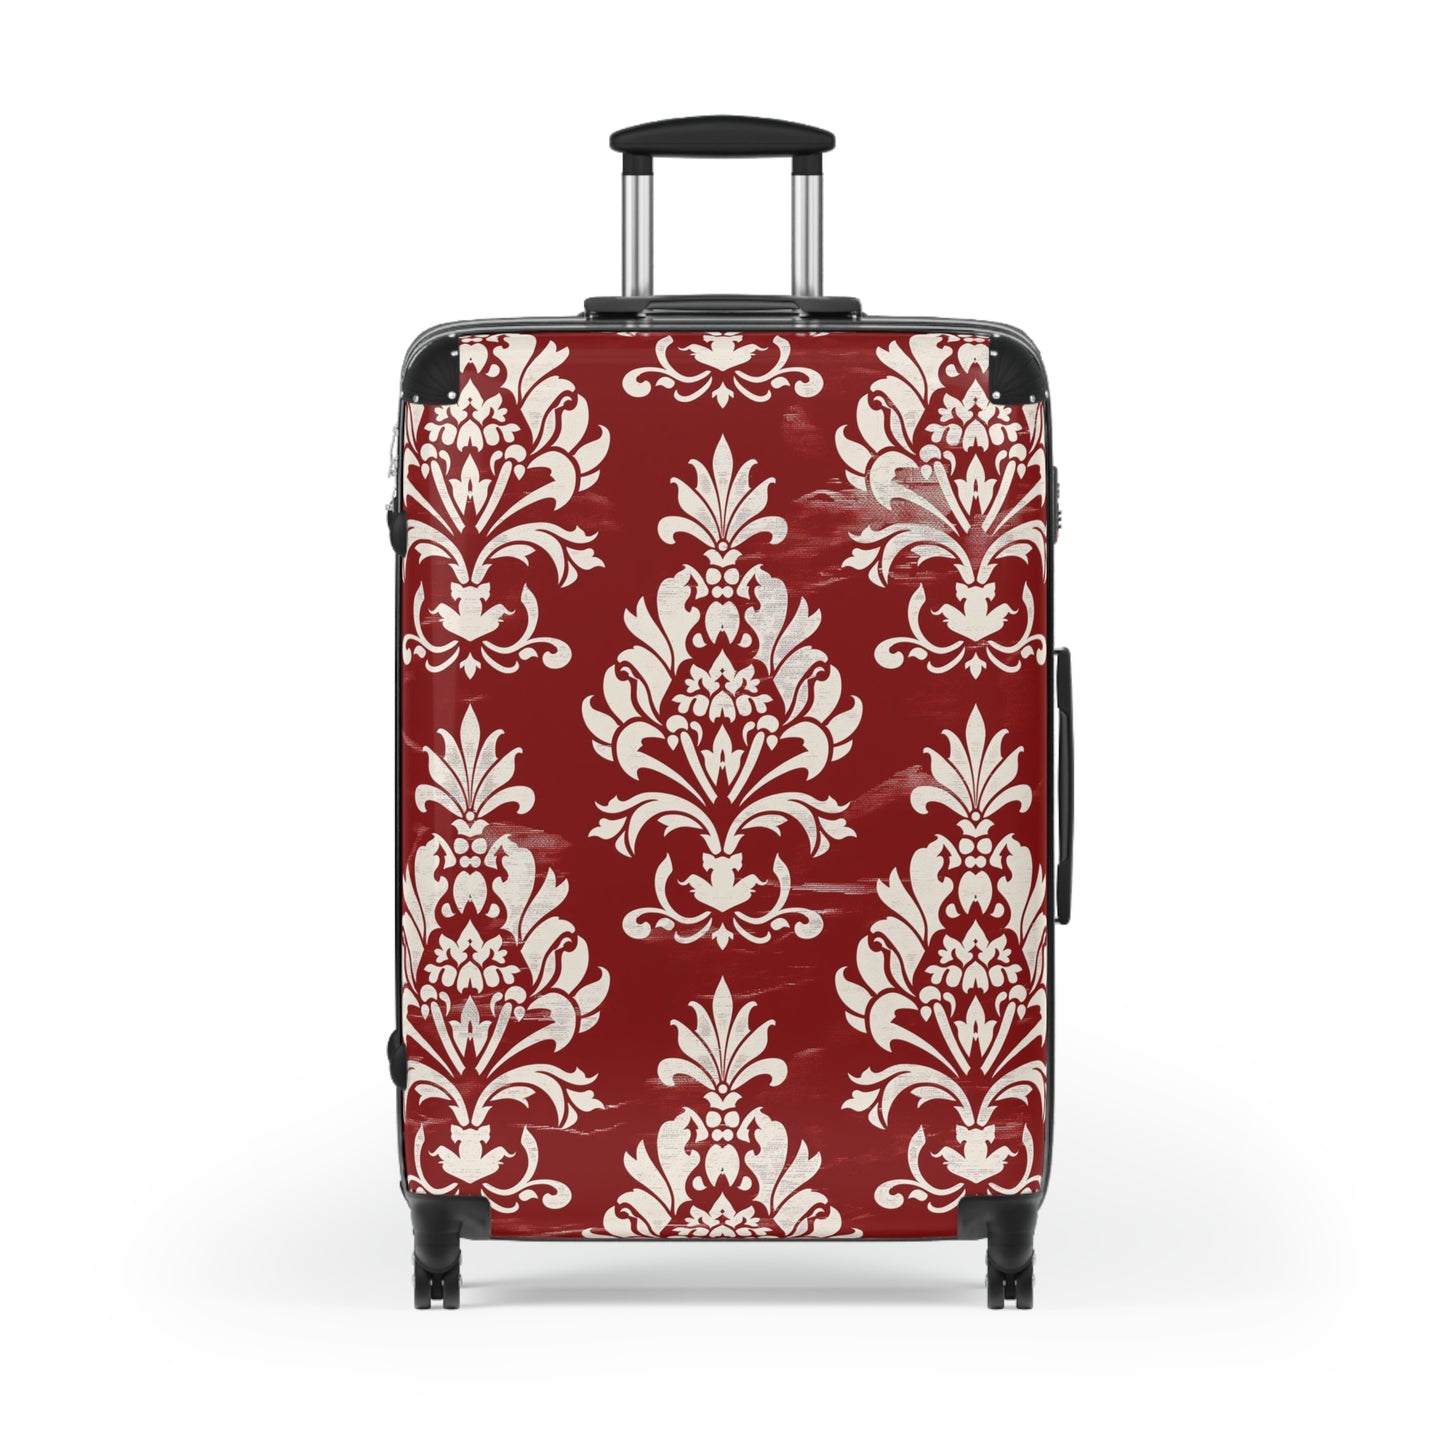 Red Elegant Victorian Suitcase